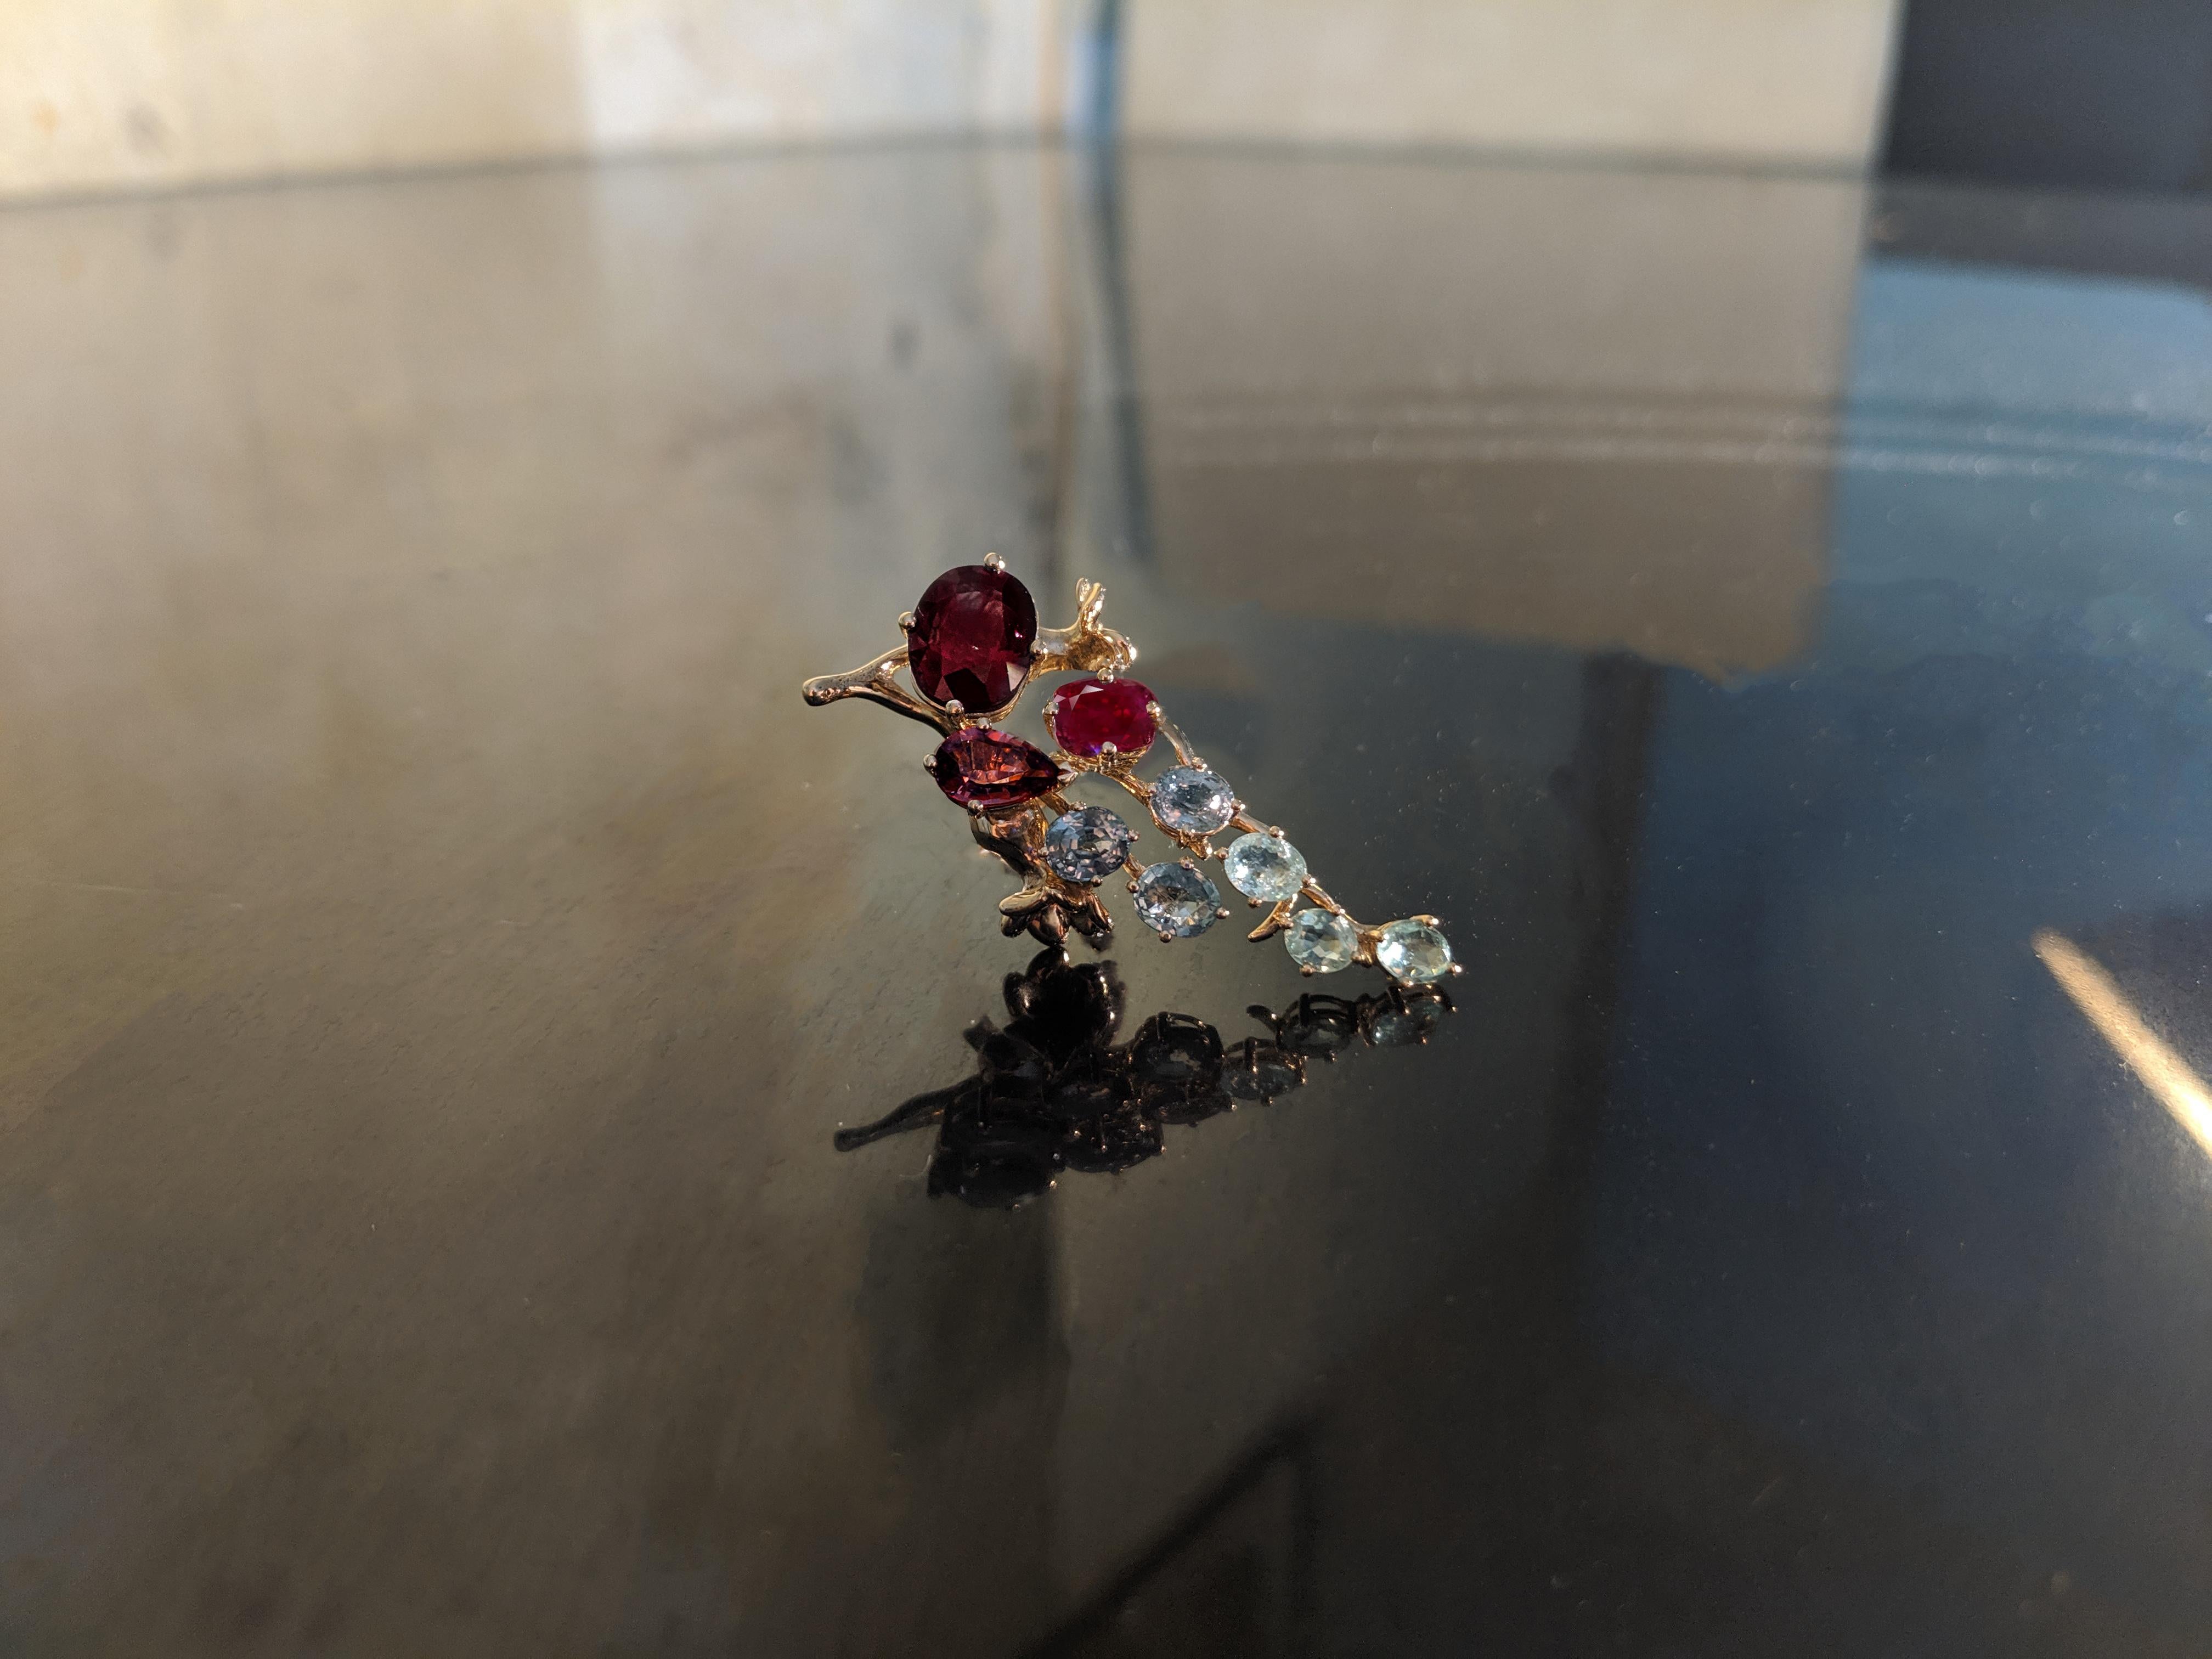 Ce collier pendentif contemporain Tobacco Flower est réalisé en or rose 18 carats. Cette pièce peut être signée personnellement.
Les joyaux naturels sont :
Rubis ovale de 4,27 carats, dimensions : 11,16x9,36 mm.
Saphir rouge froid ovale, 0,95